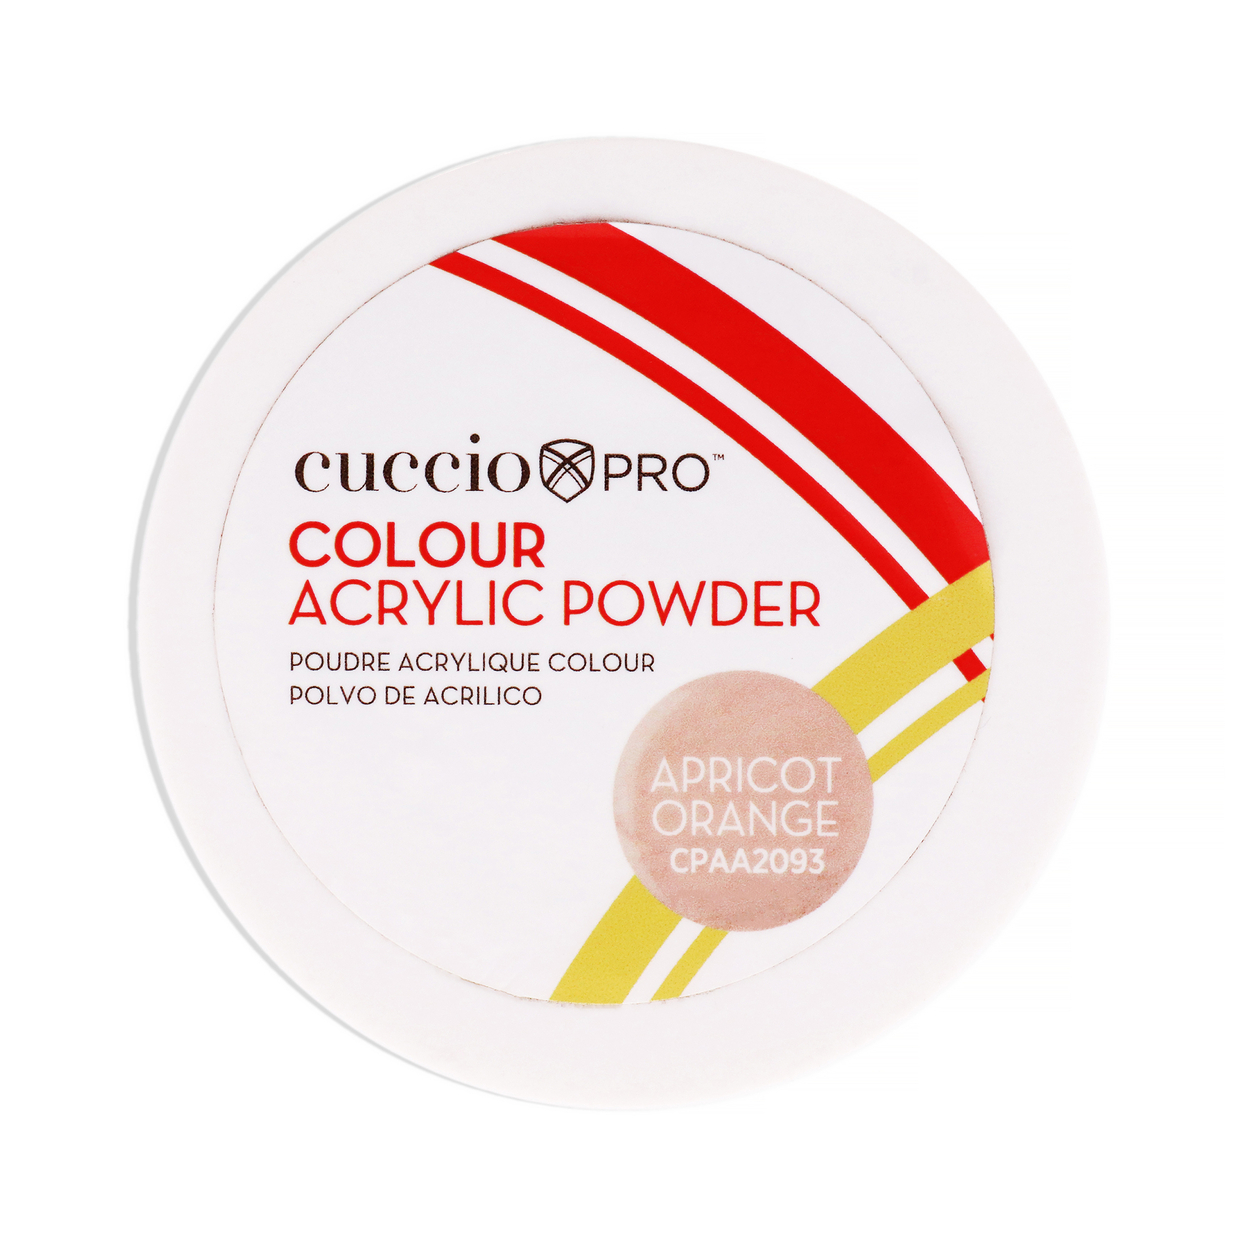 Cuccio PRO Colour Acrylic Powder - Apricot Orange 1.6 Oz